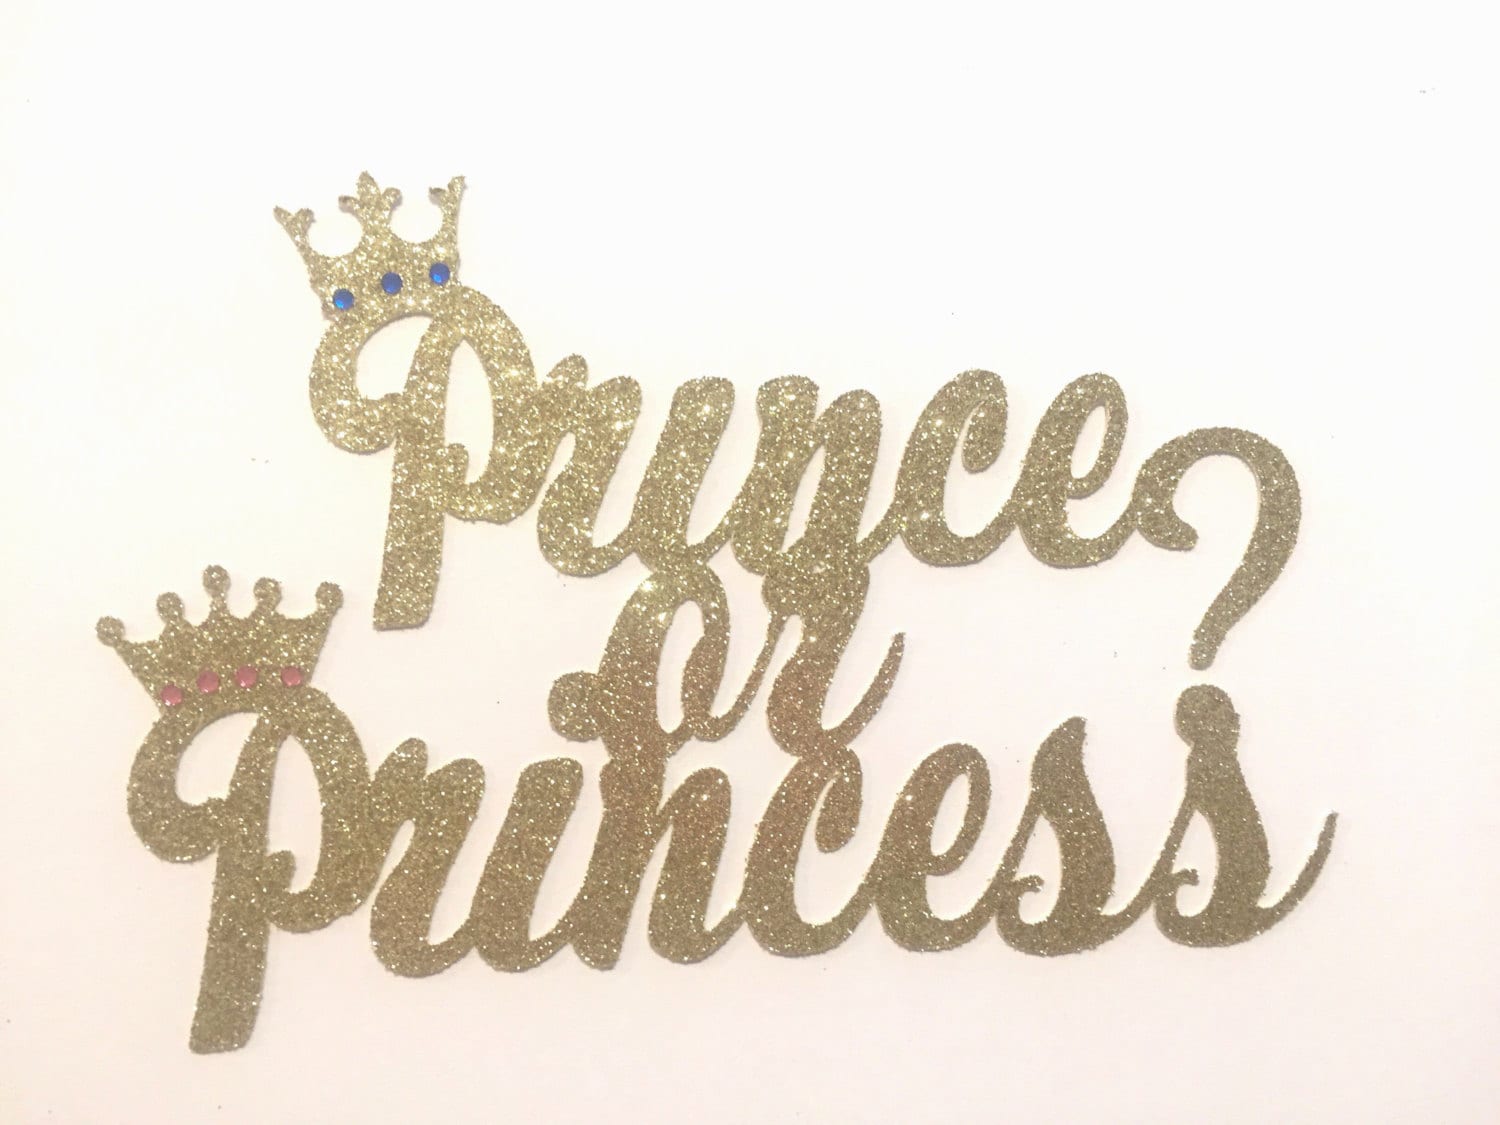 Download Prince or princess baby shower gender reveal gender reveal